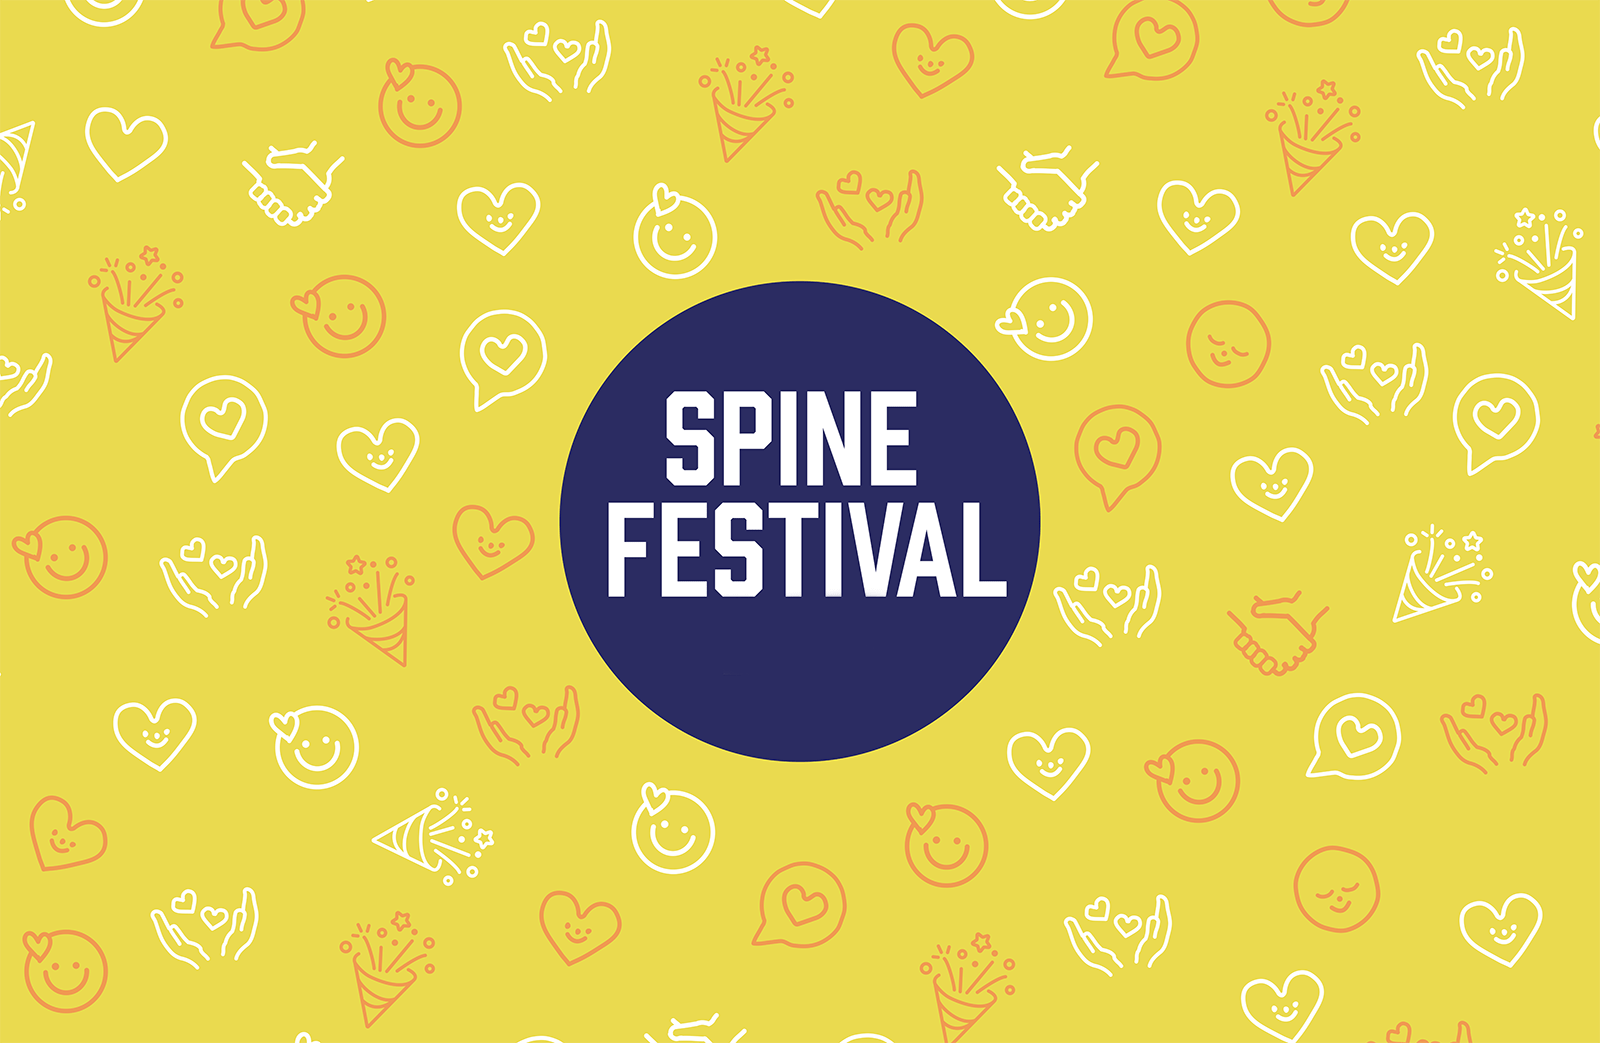 Spine Festival 2022